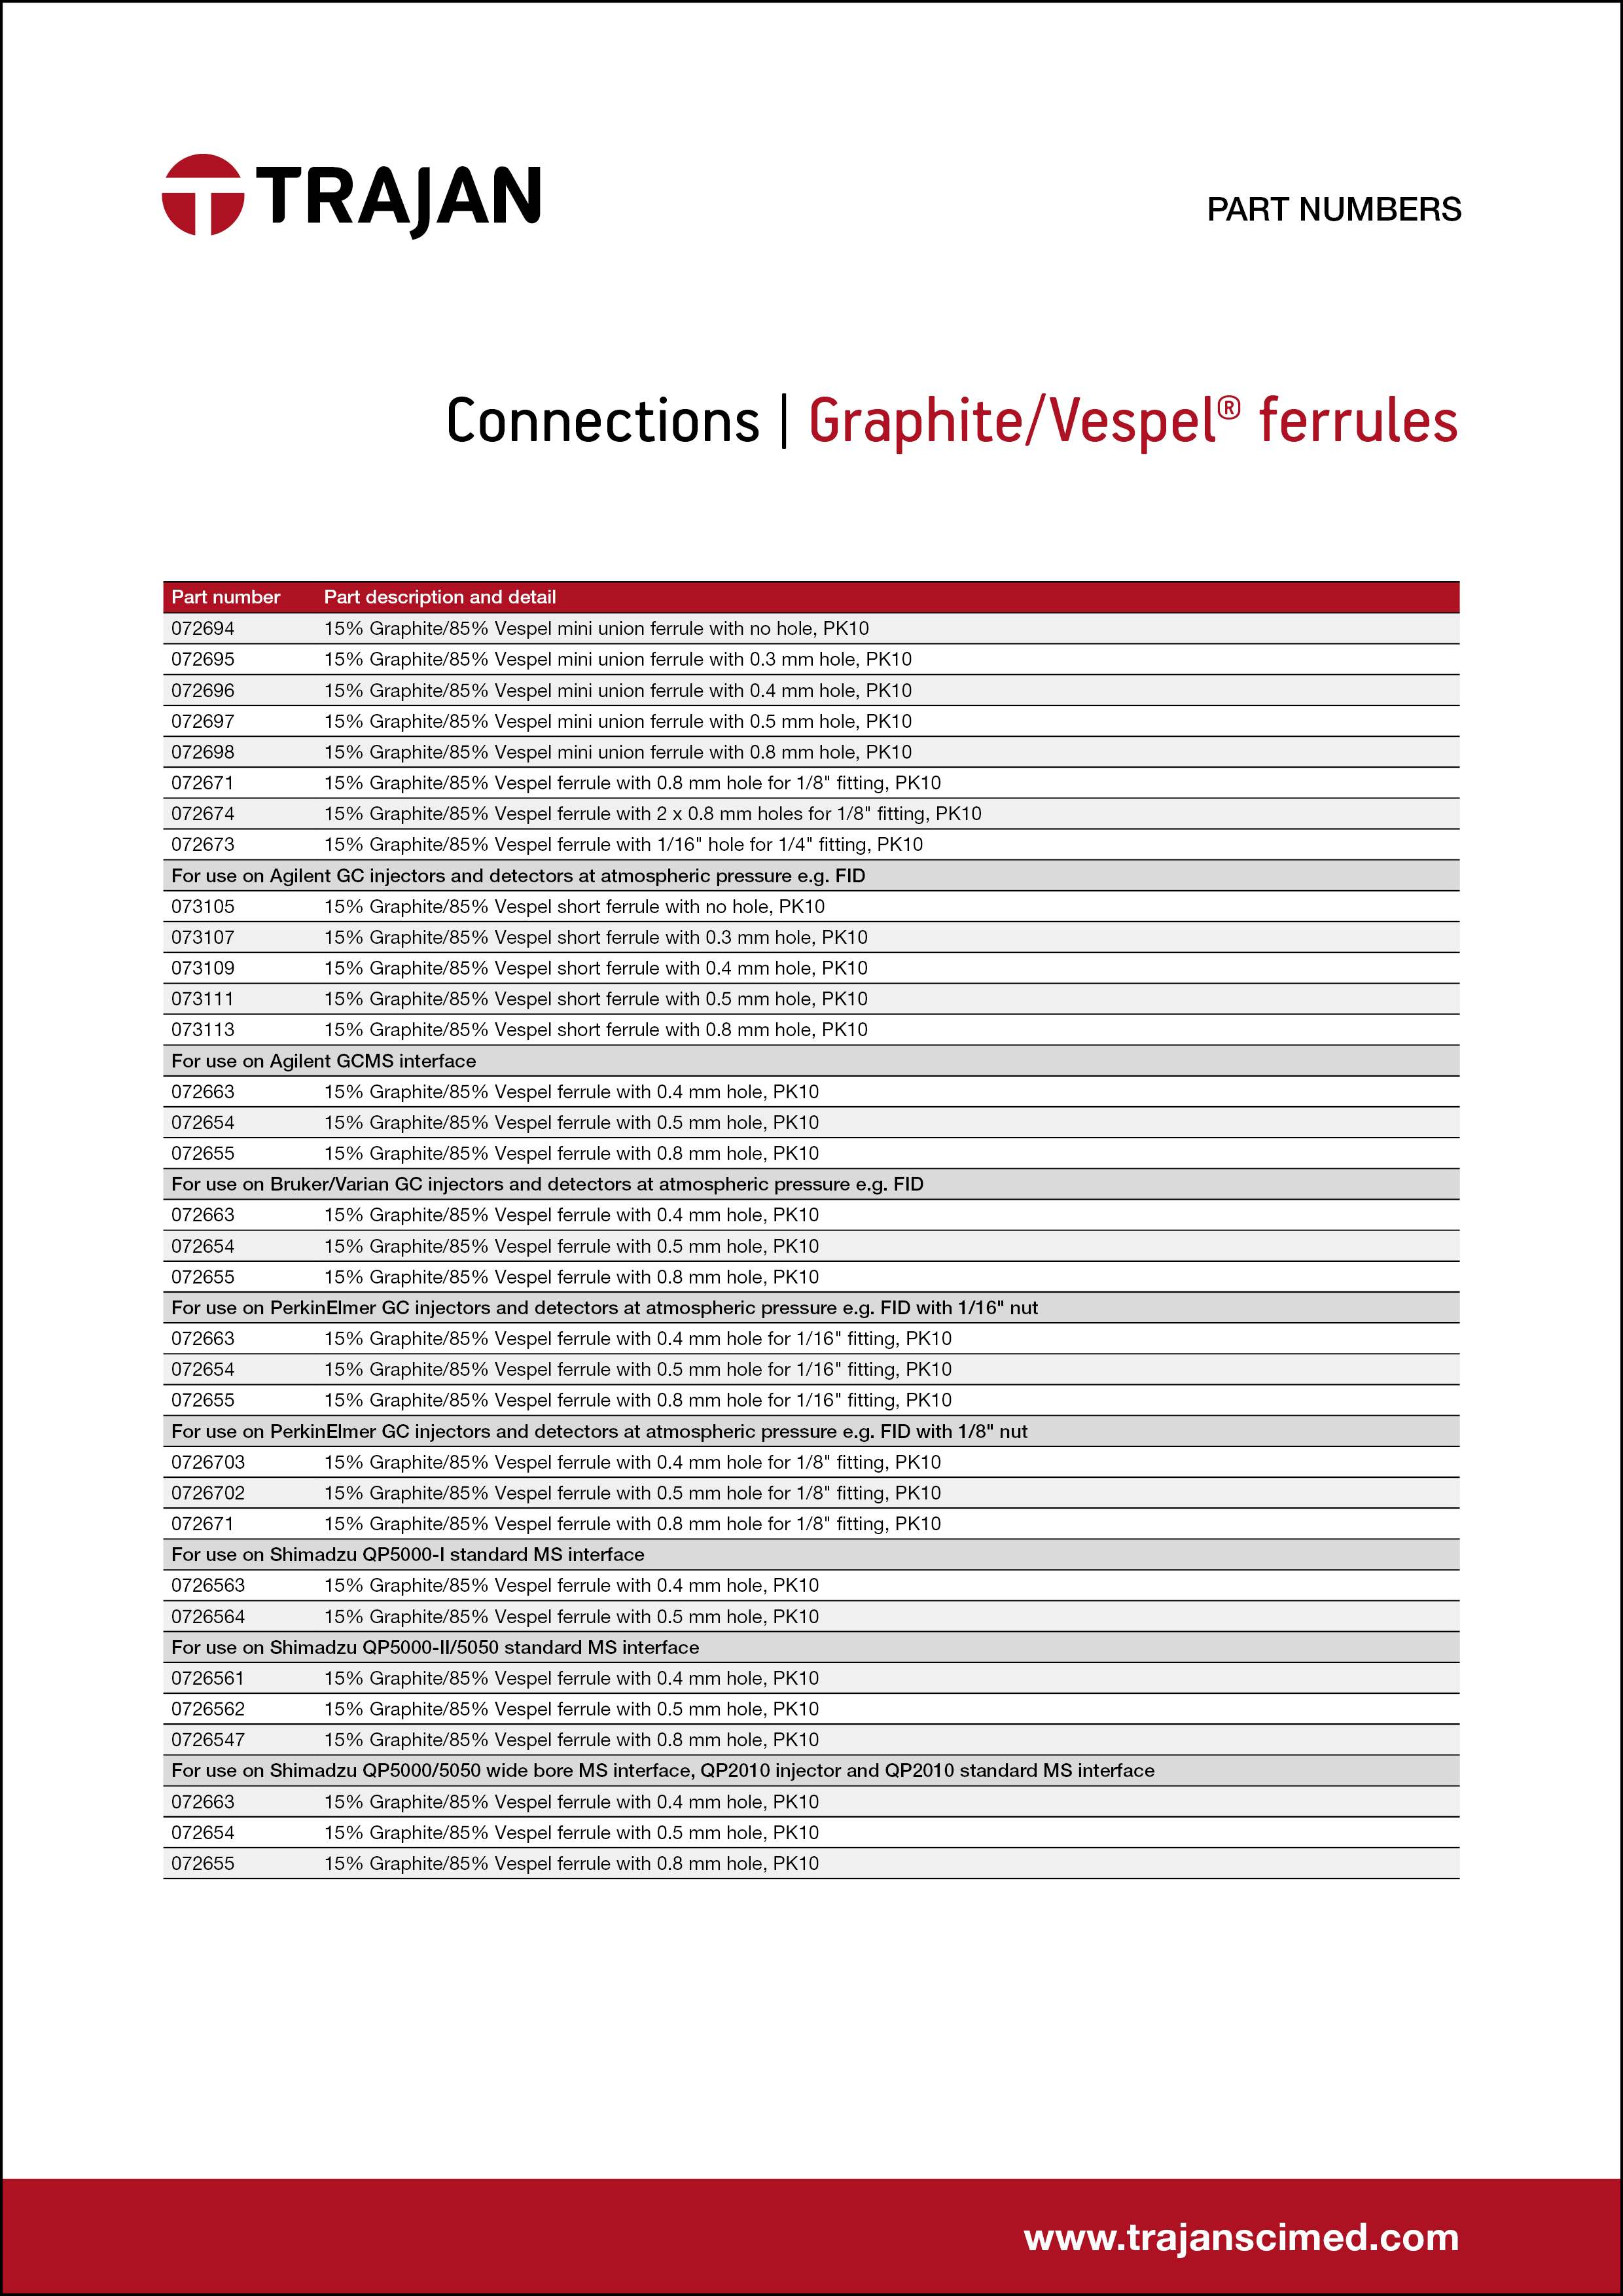 Part Number List - Graphite/Vespel® GC ferrules